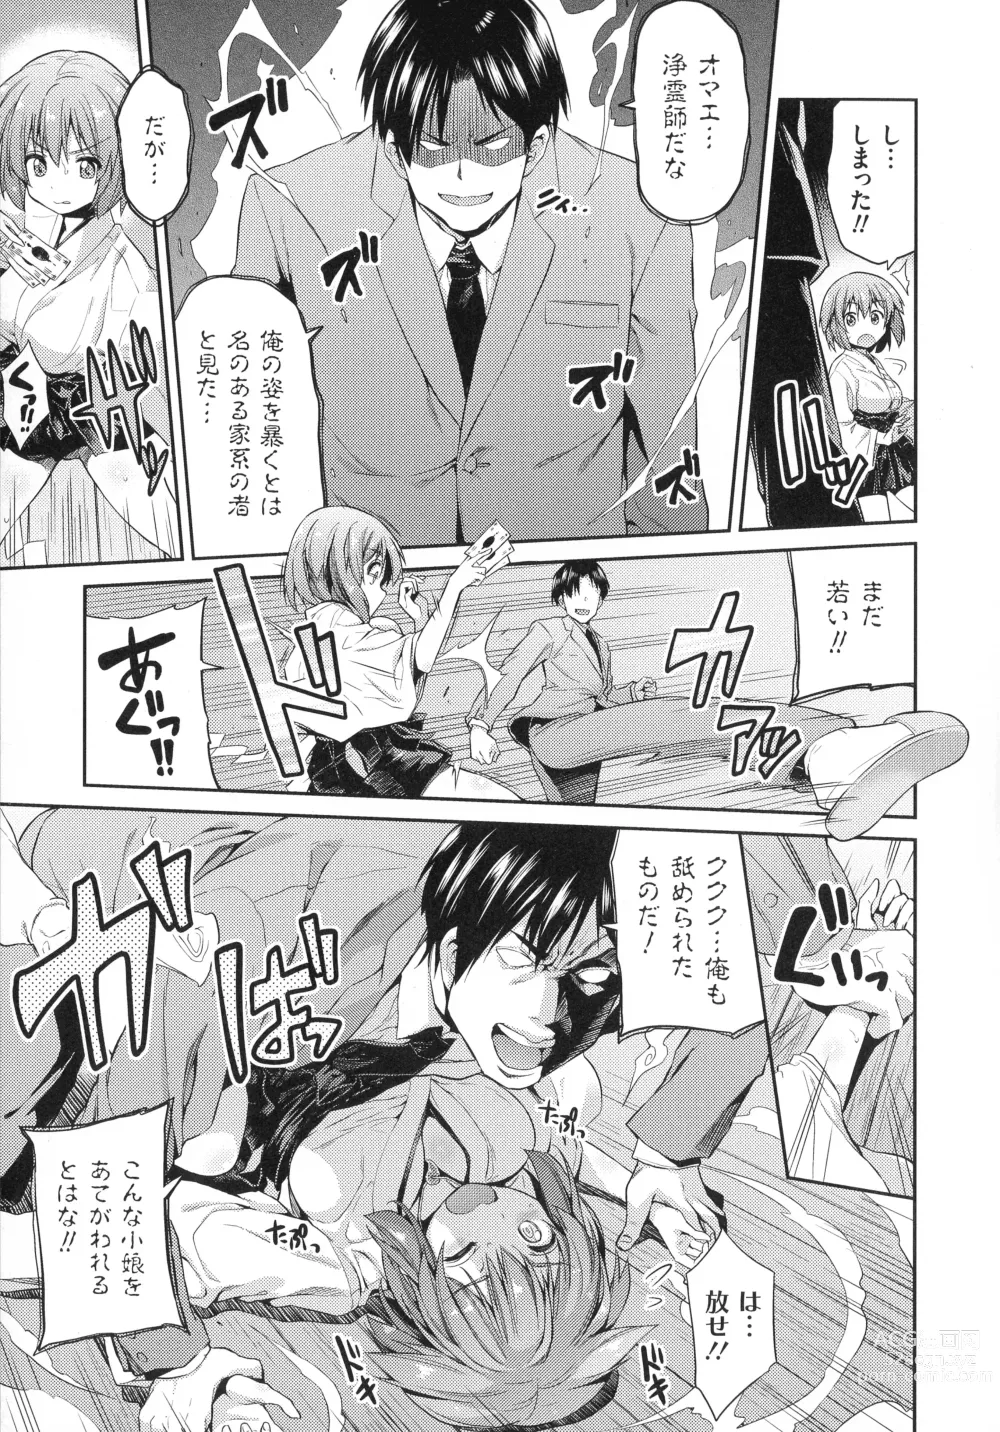 Page 12 of manga Hyoui Koukan